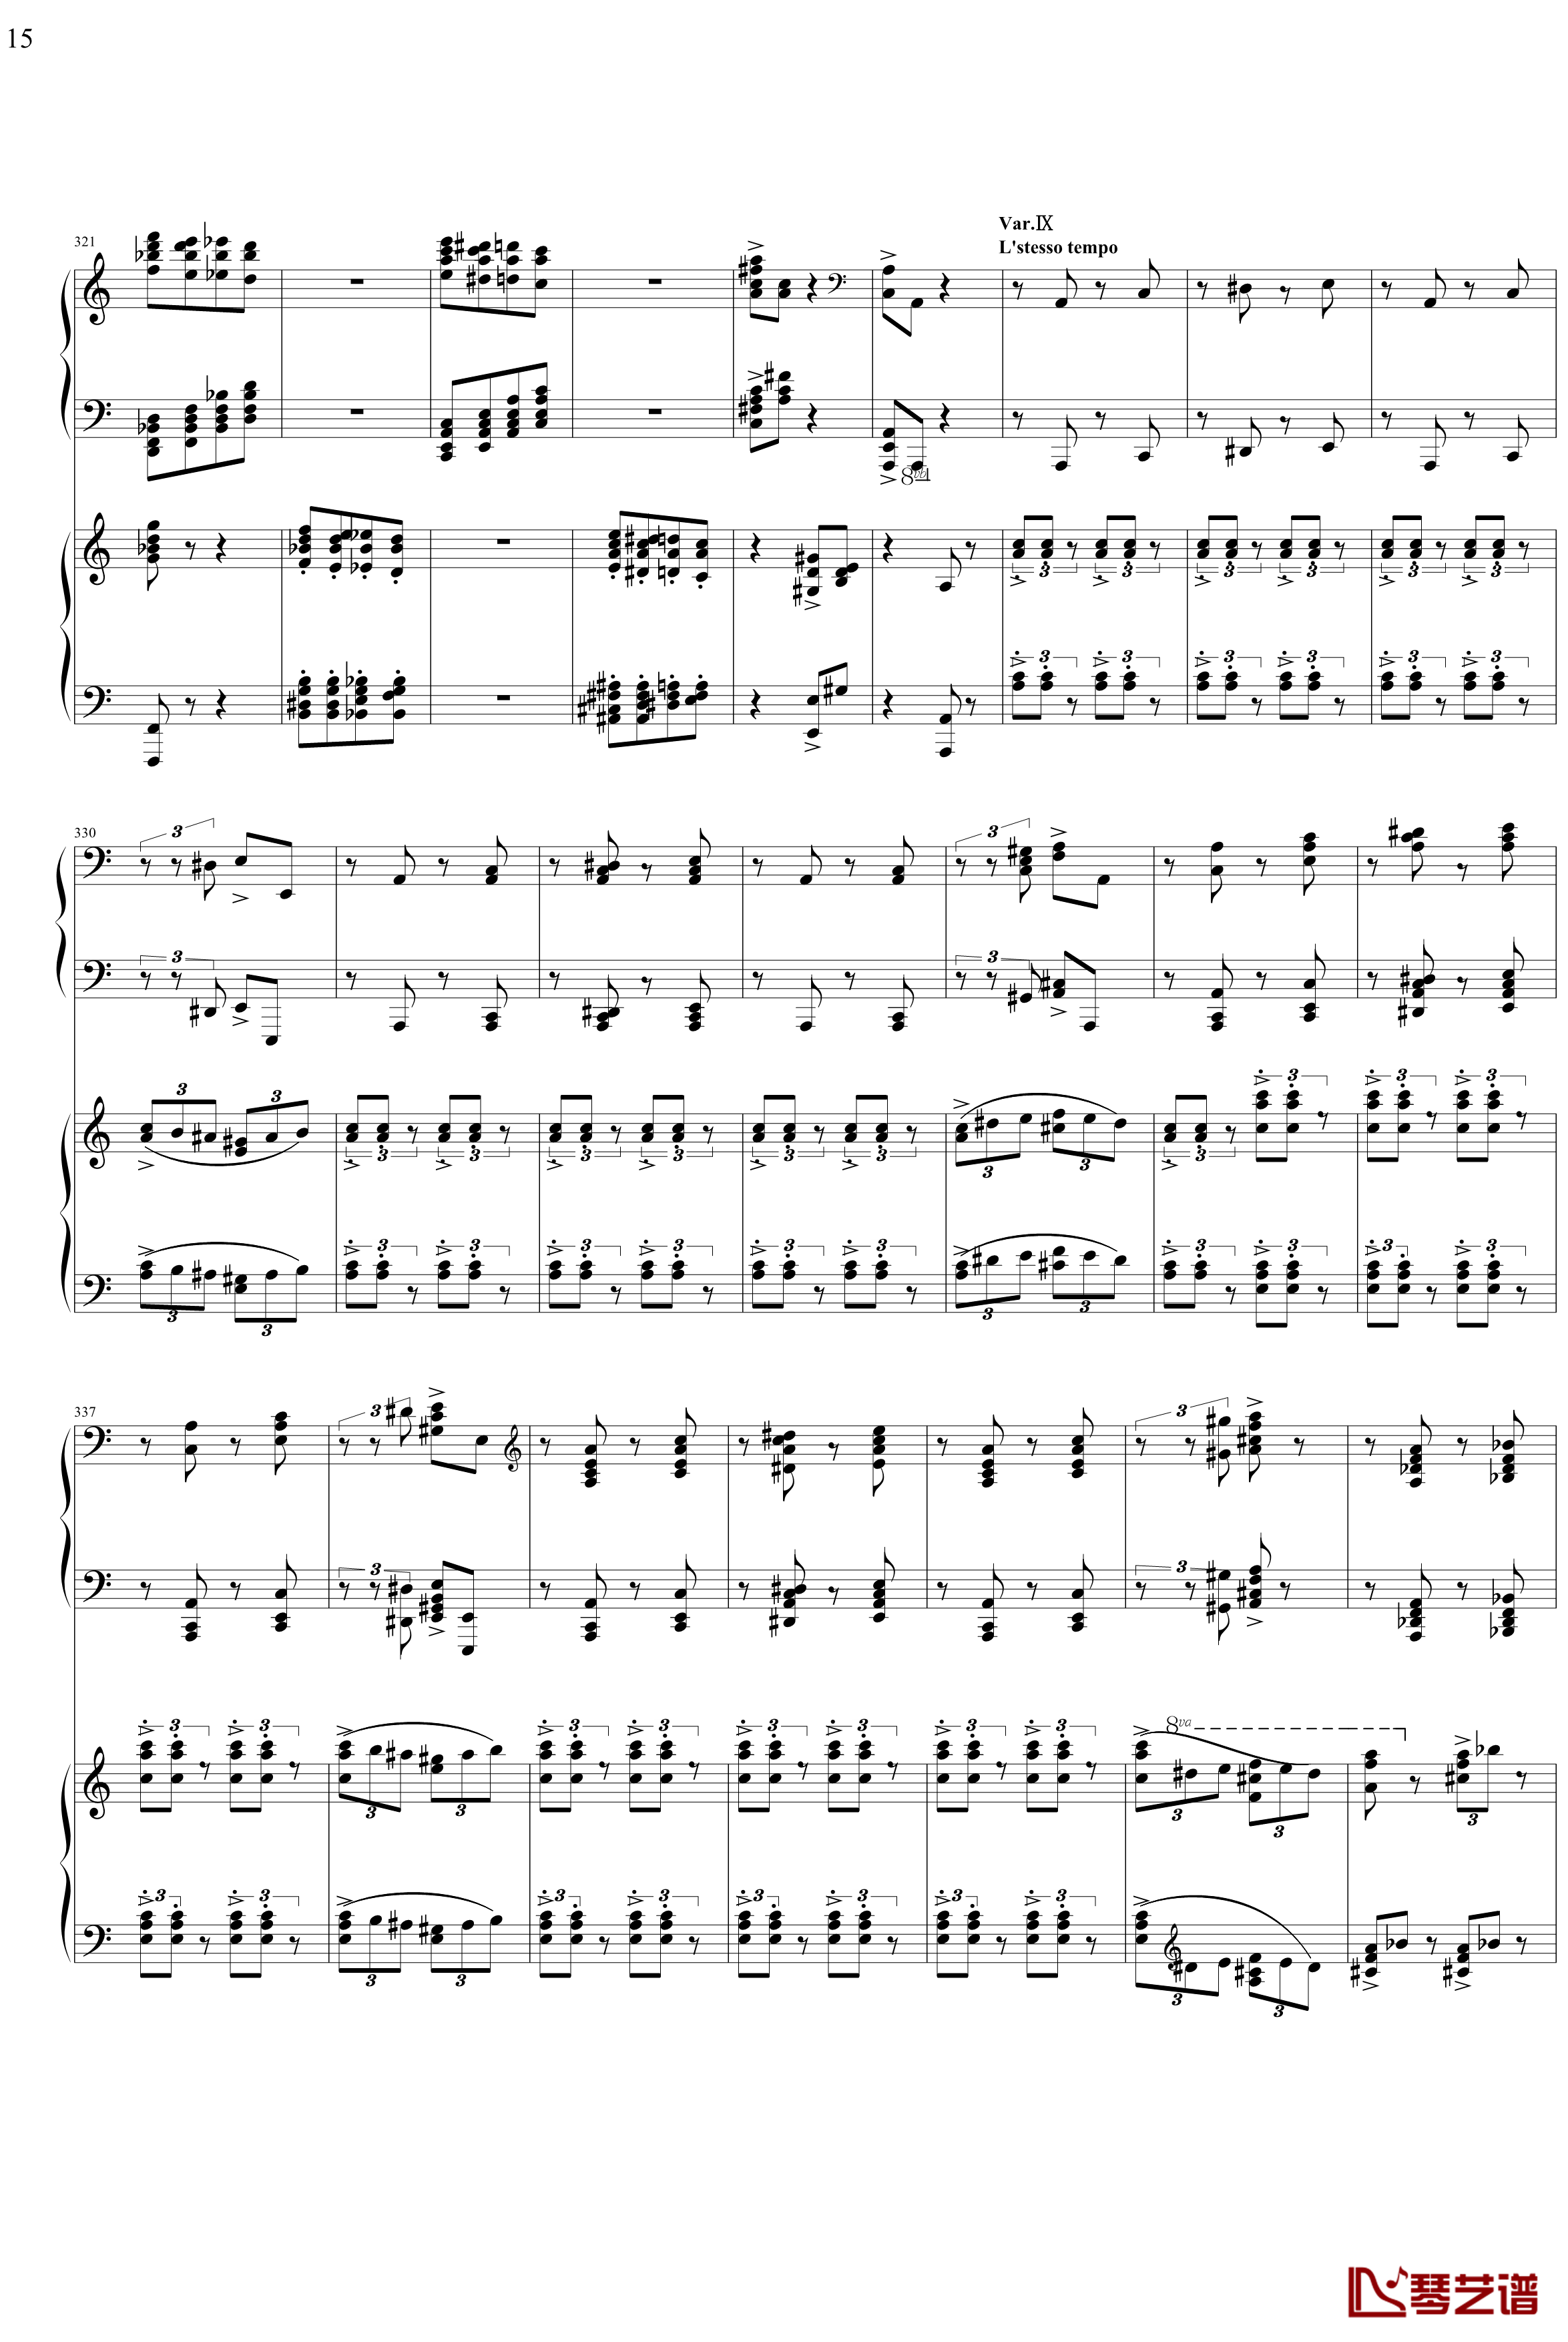 帕格尼主题狂想曲钢琴谱-1~10变奏-拉赫马尼若夫15